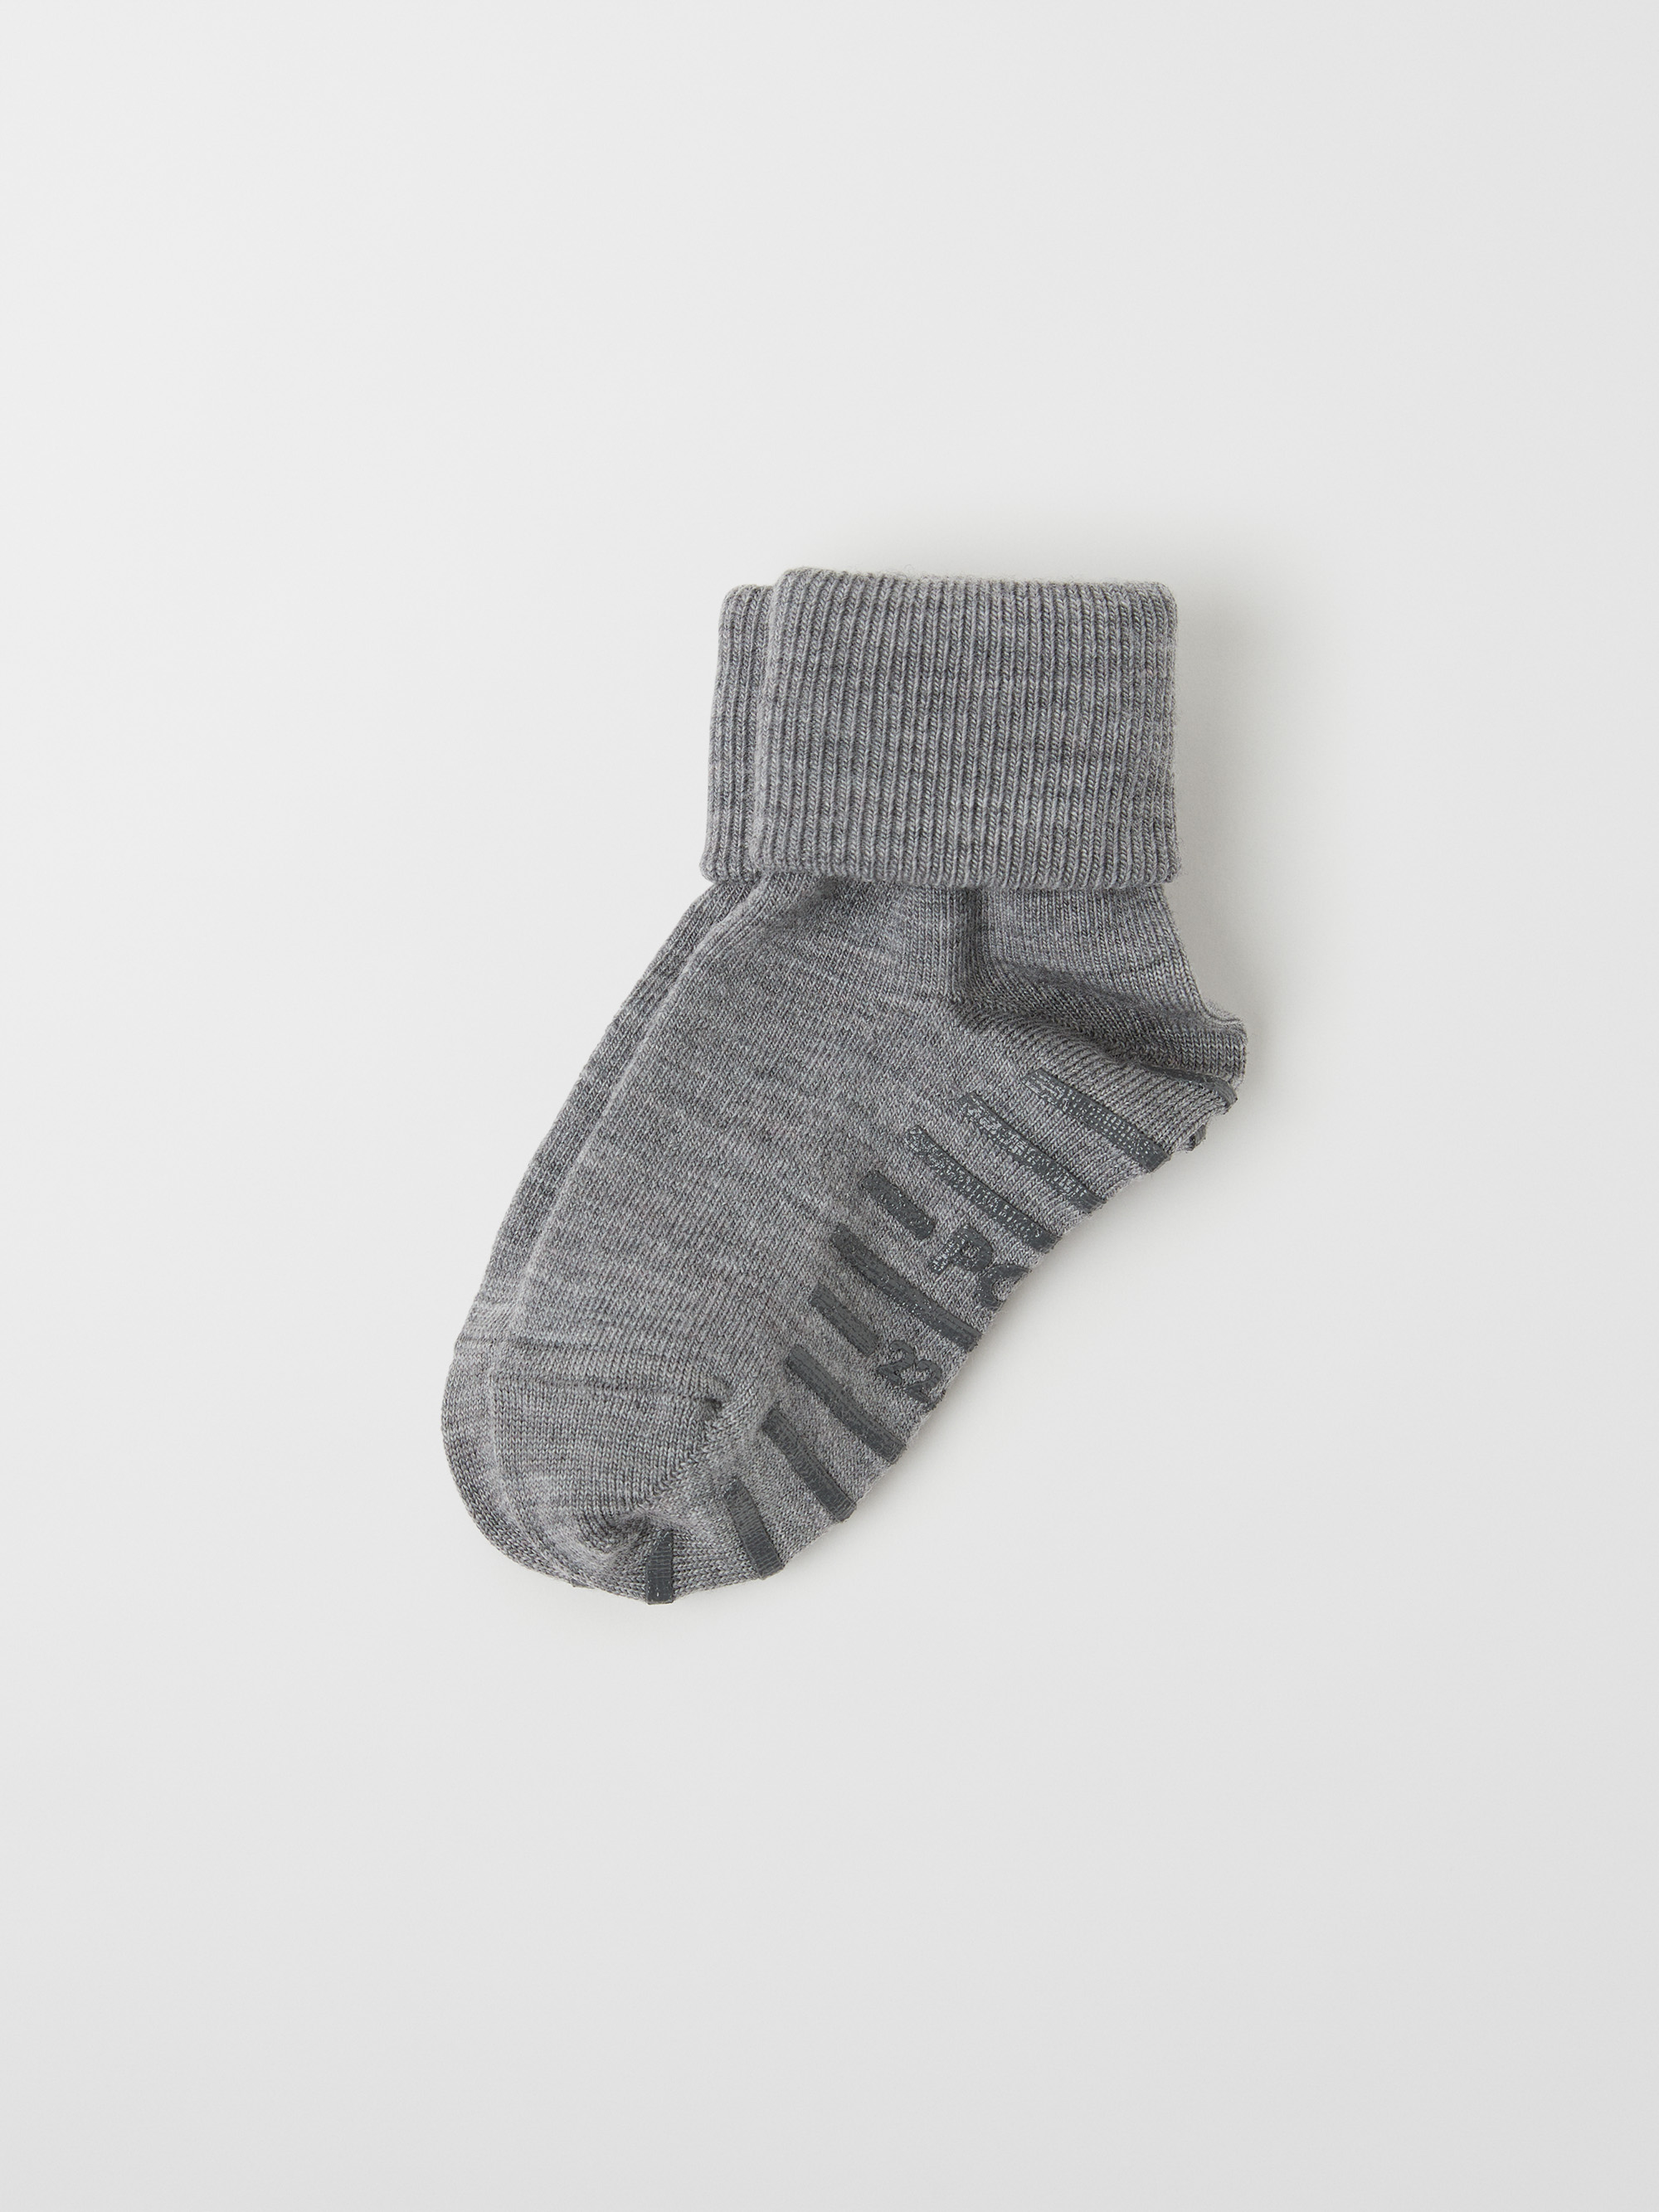 Sokker sklisikring merinoull - barneklaer - undertoy - sokker